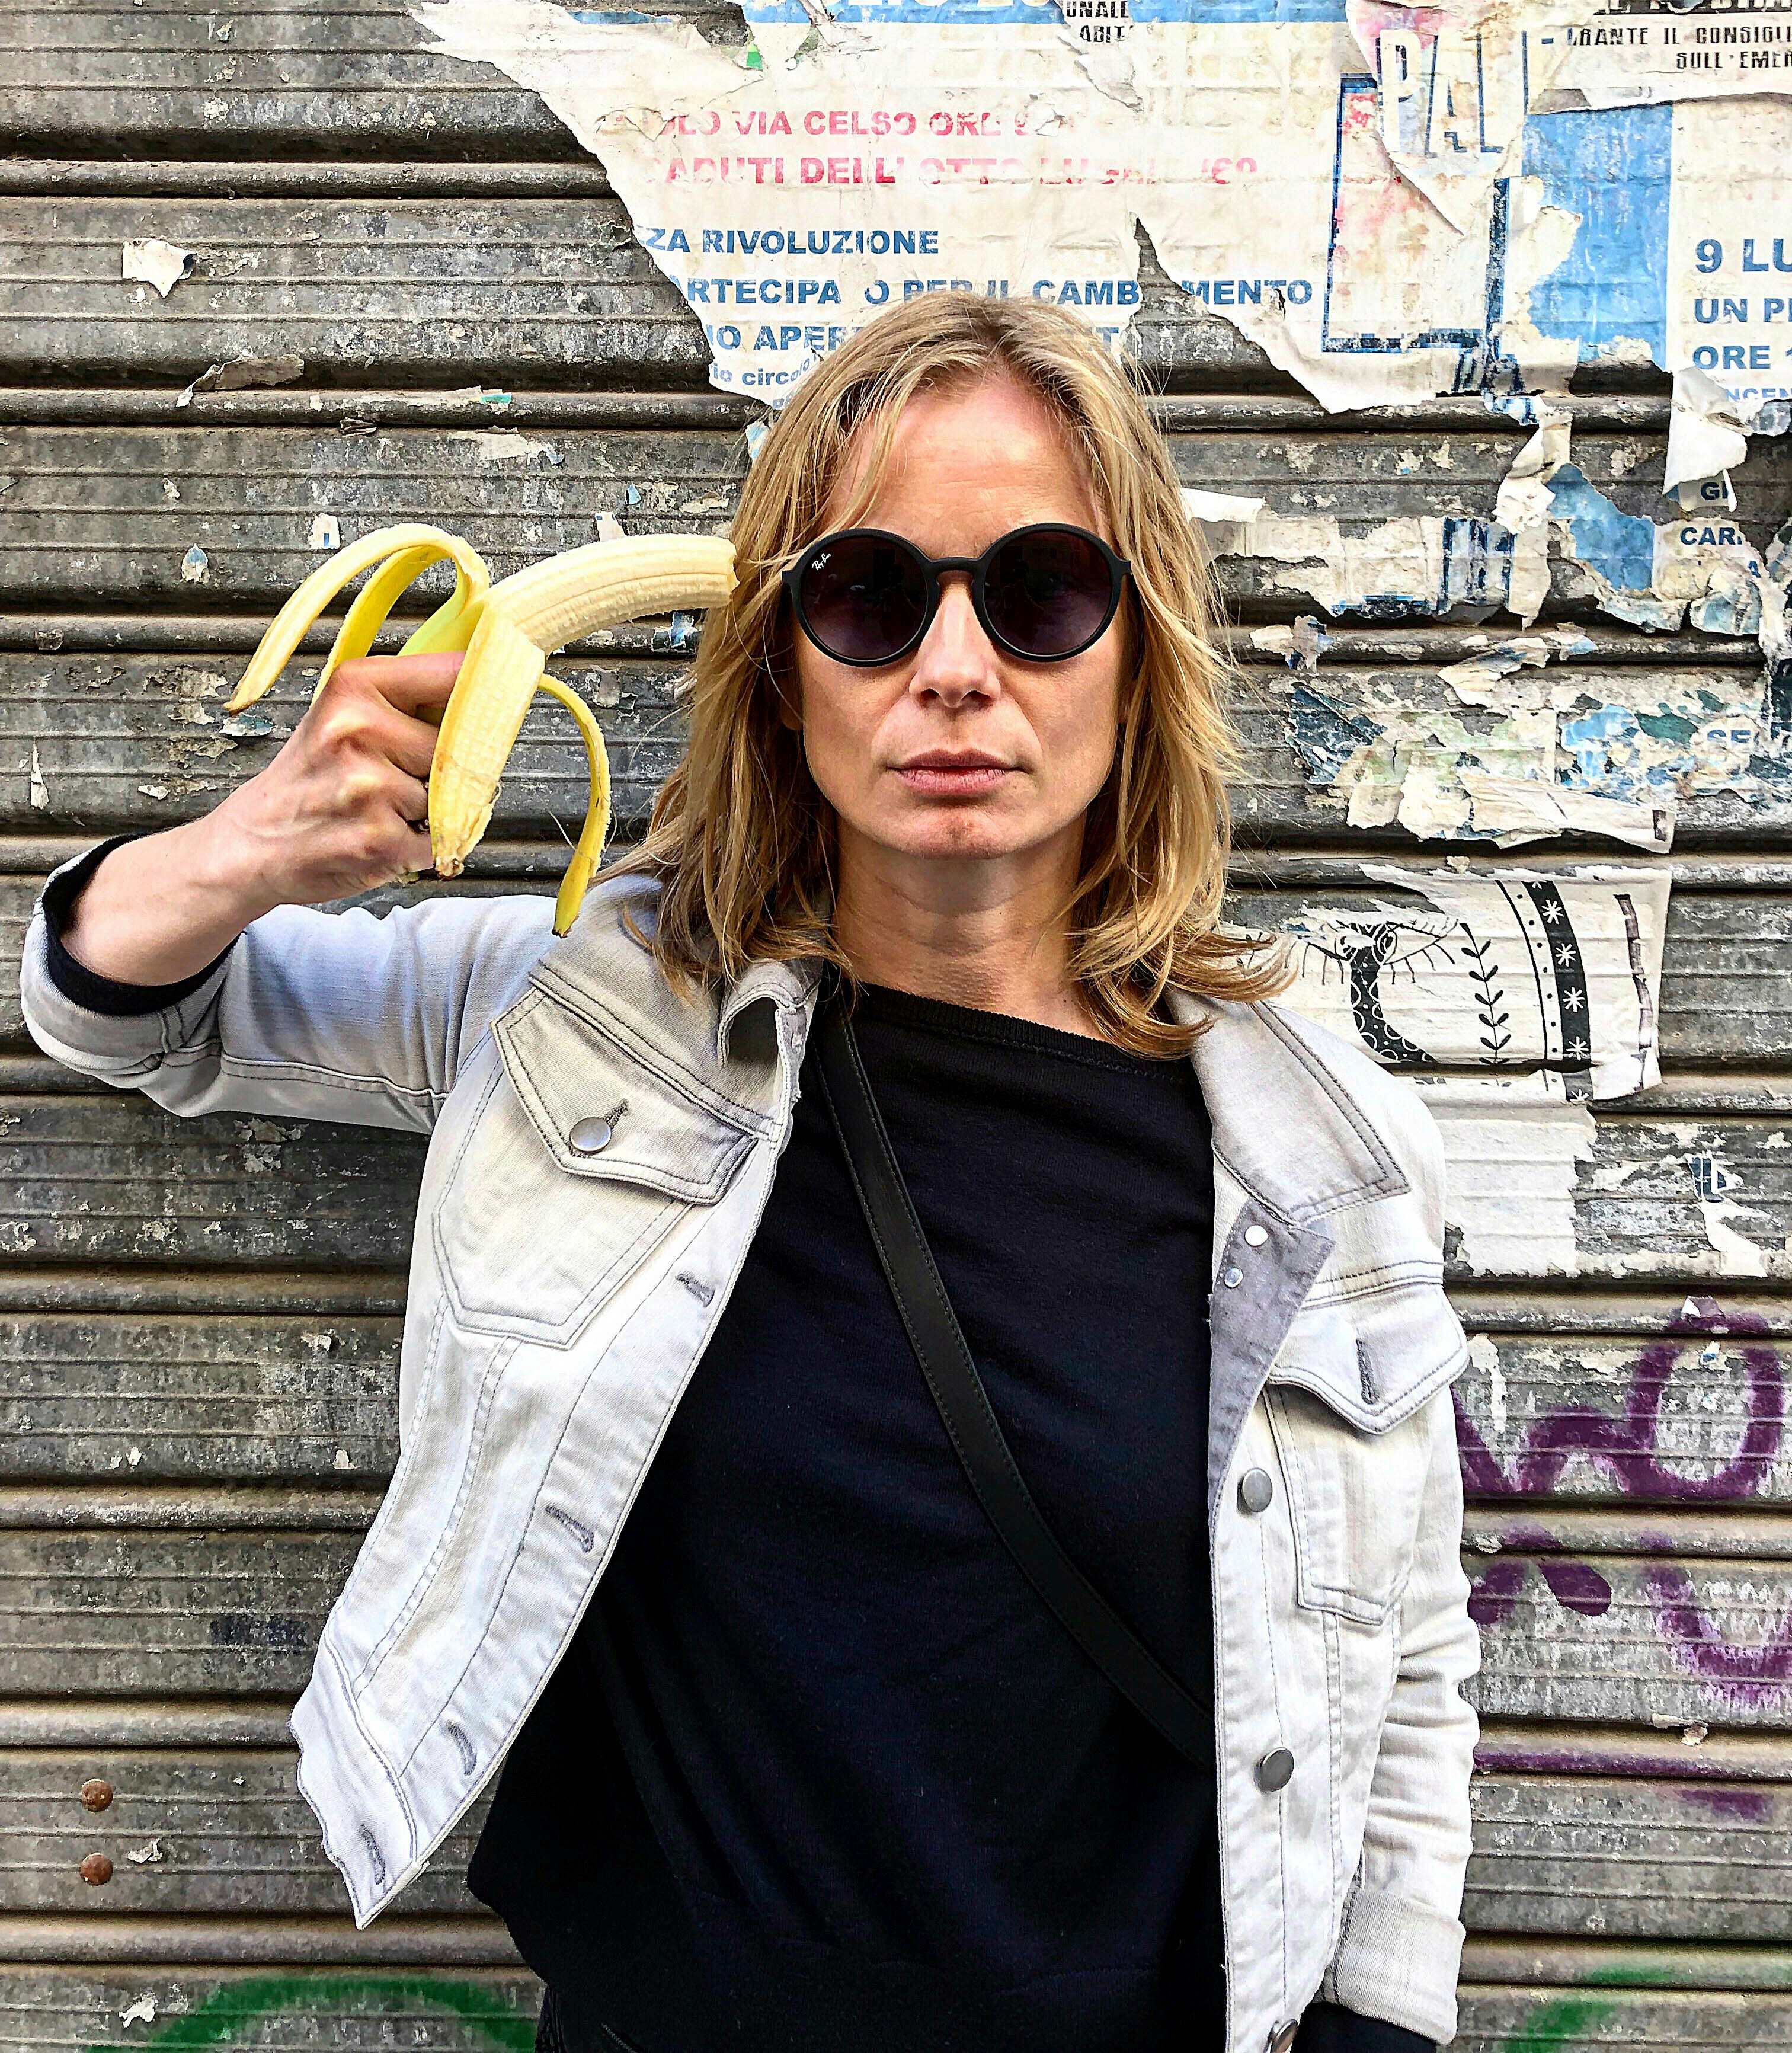 FOX NEWS: Ban on banana-based artwork at Polish museum fuels banana-based protests